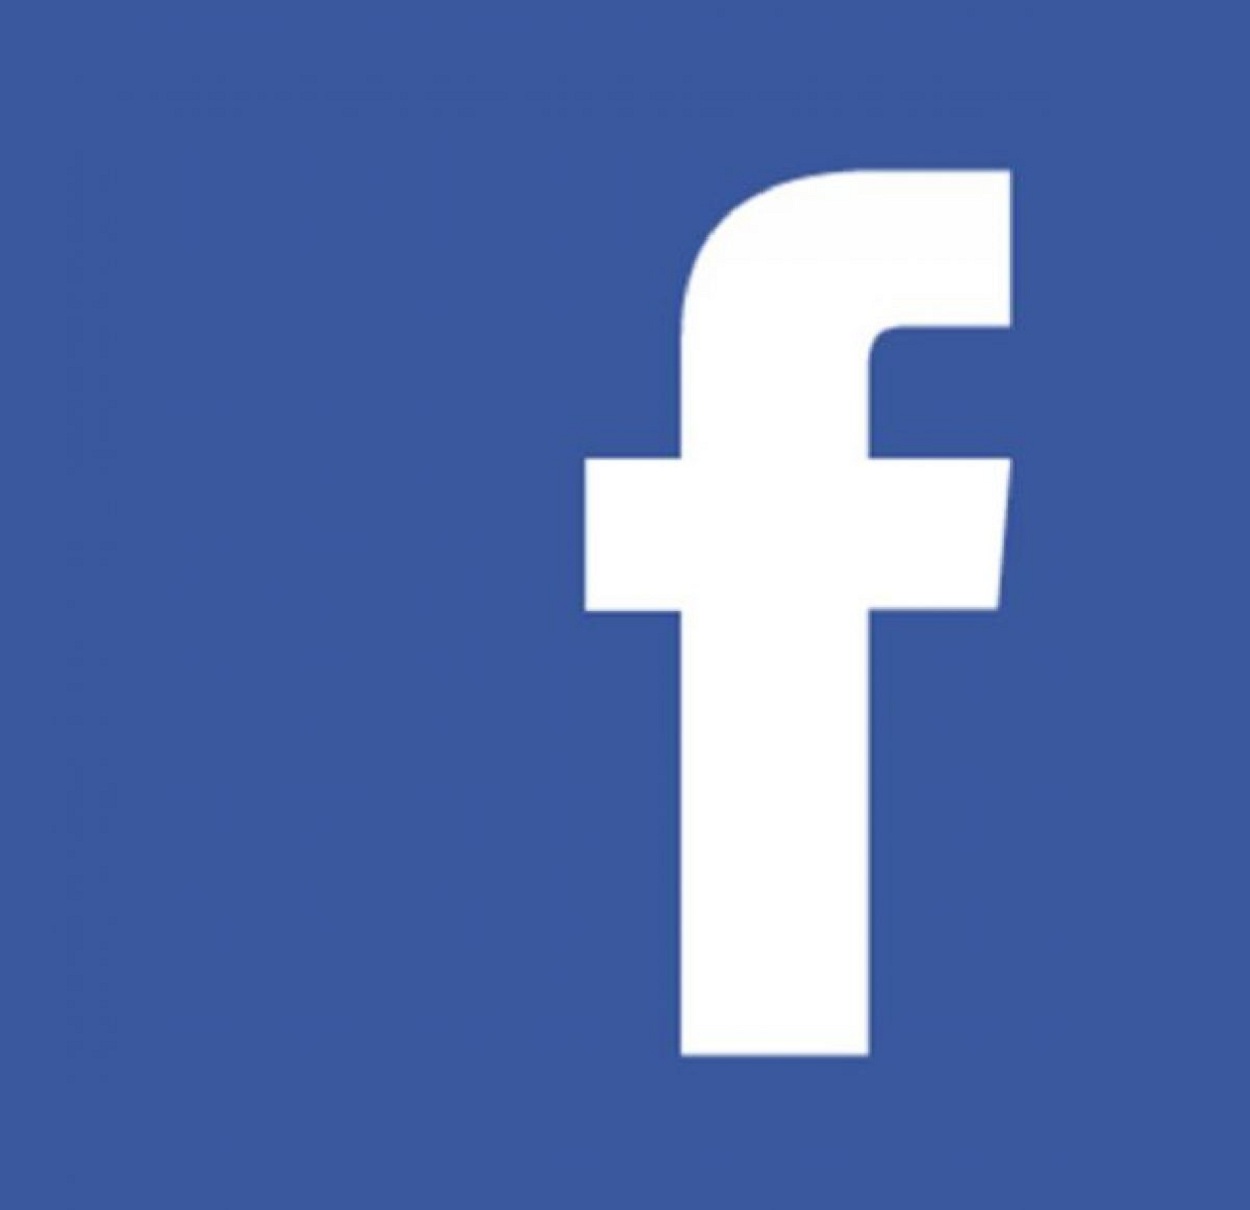 صحيفة بريطانية شهيرة: فيس بوك خطر حقيقي على الديمقراطية والتضليل يُهدد حياتنا.. وتكشف التفاصيل